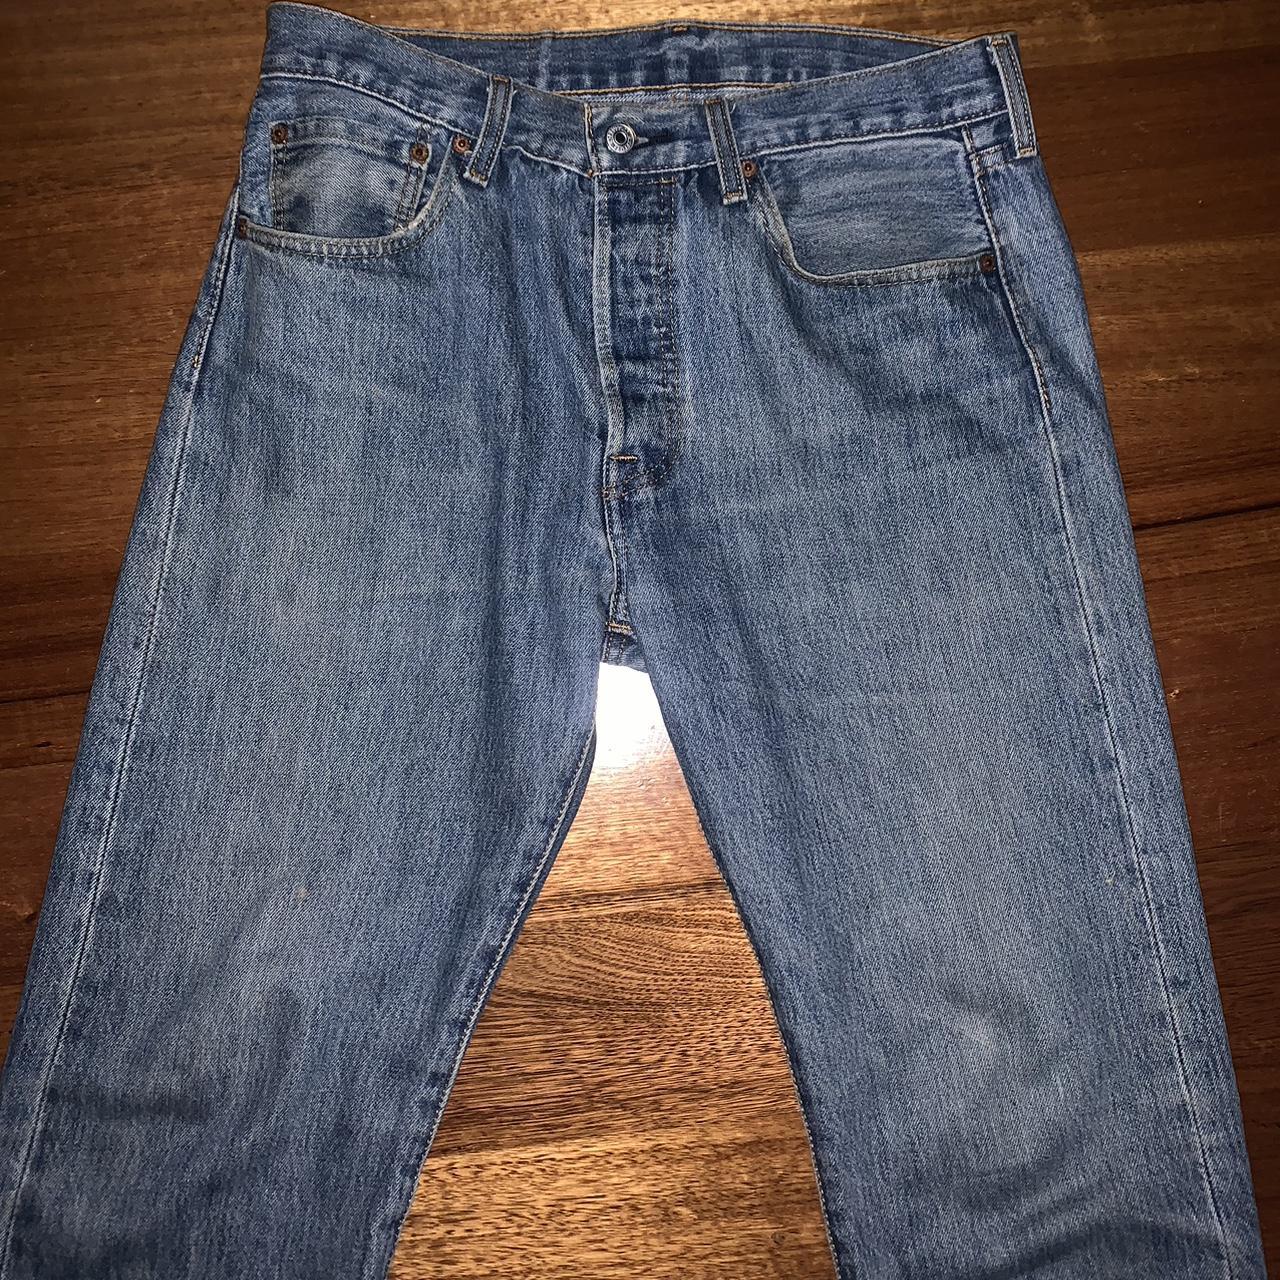 501 Levi’s Original Fit Cotton Straight Leg Jeans... - Depop